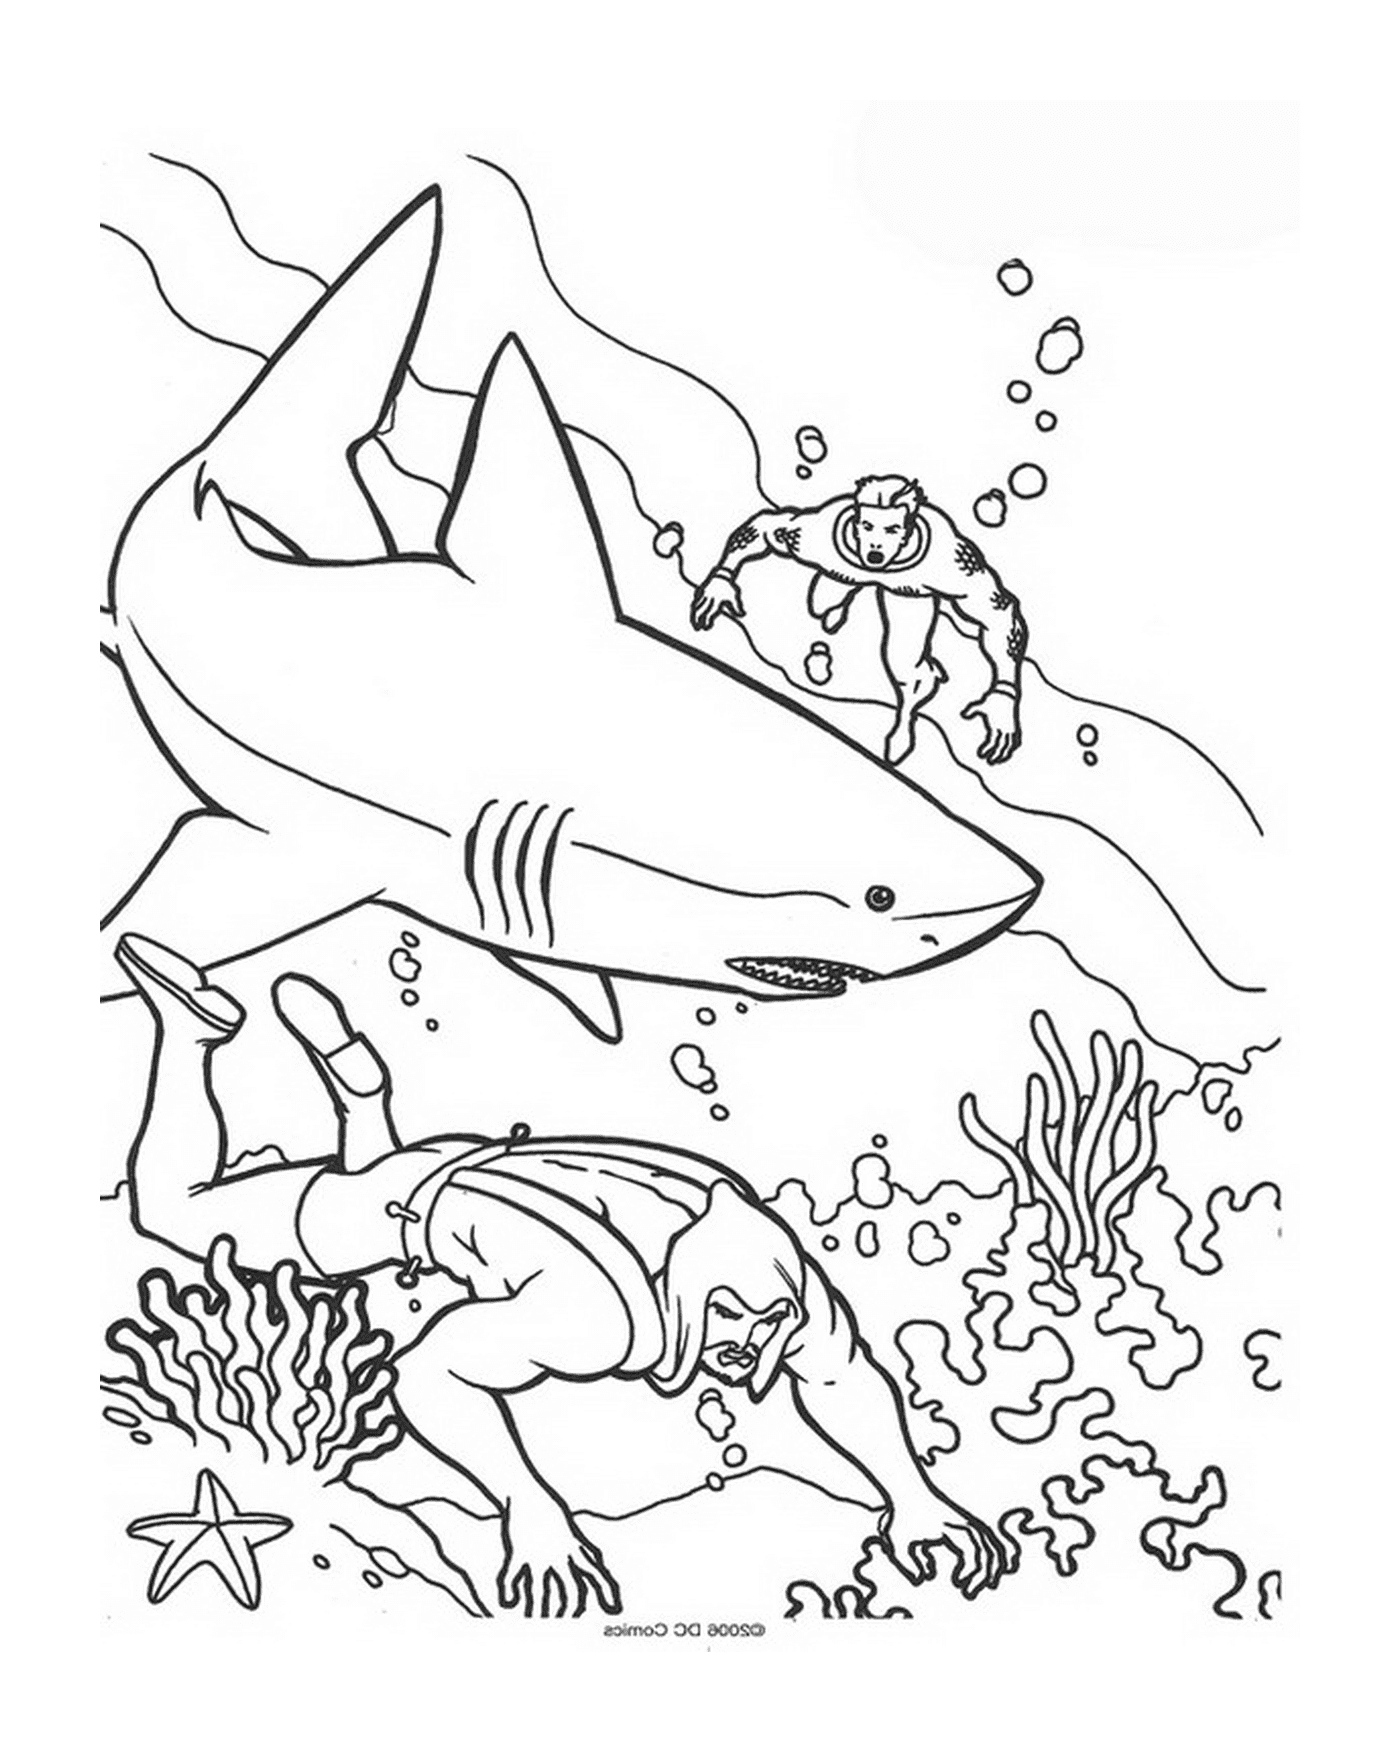  Acuario con tiburones 